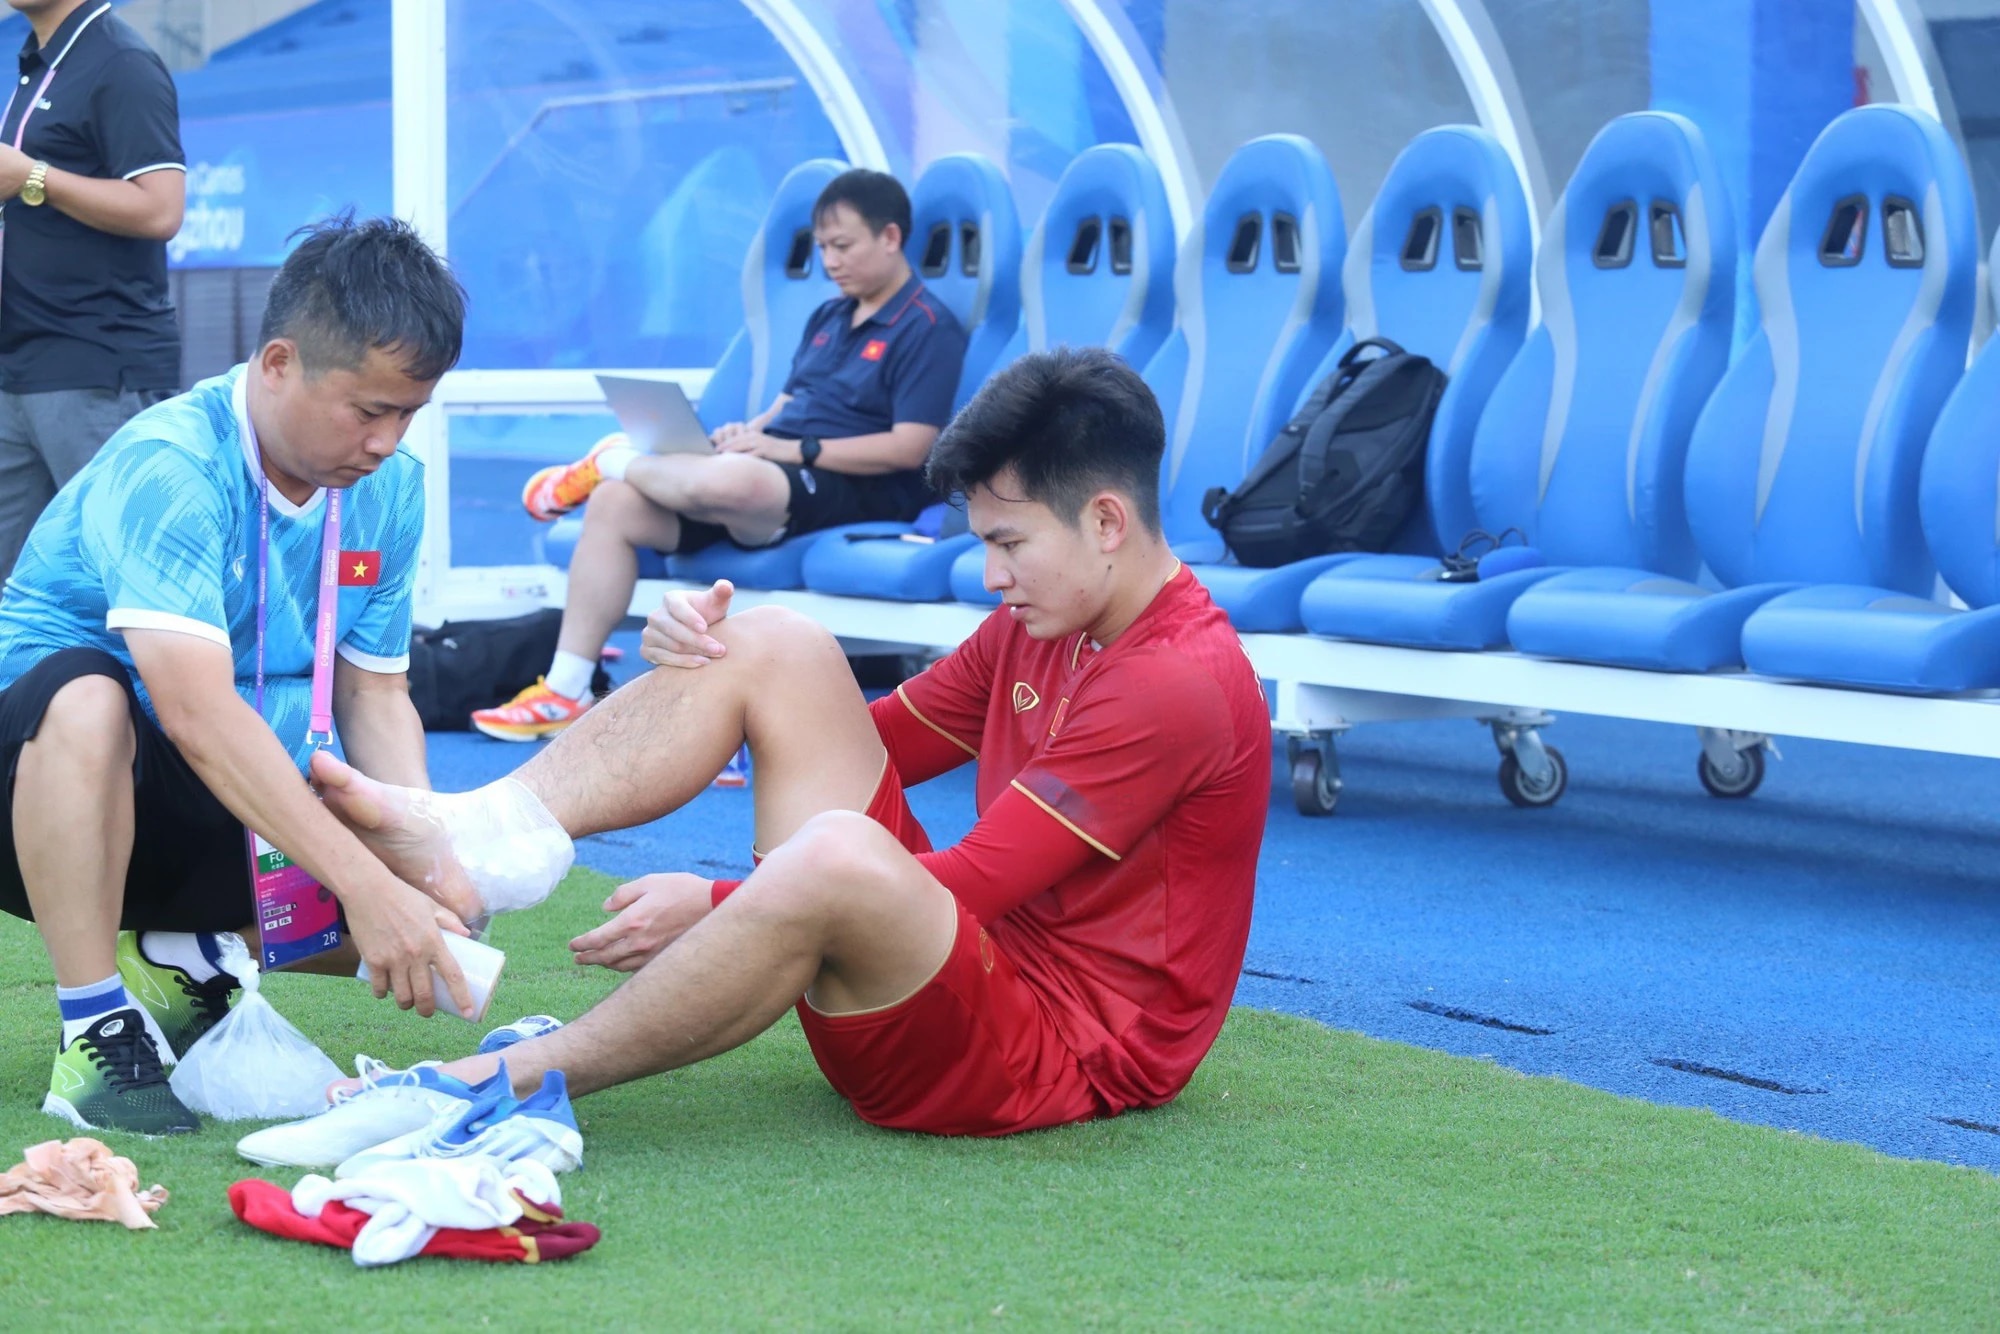 Olympic Việt Nam nhận cú sốc lực lượng trước trận gặp Mông Cổ  - Ảnh 1.